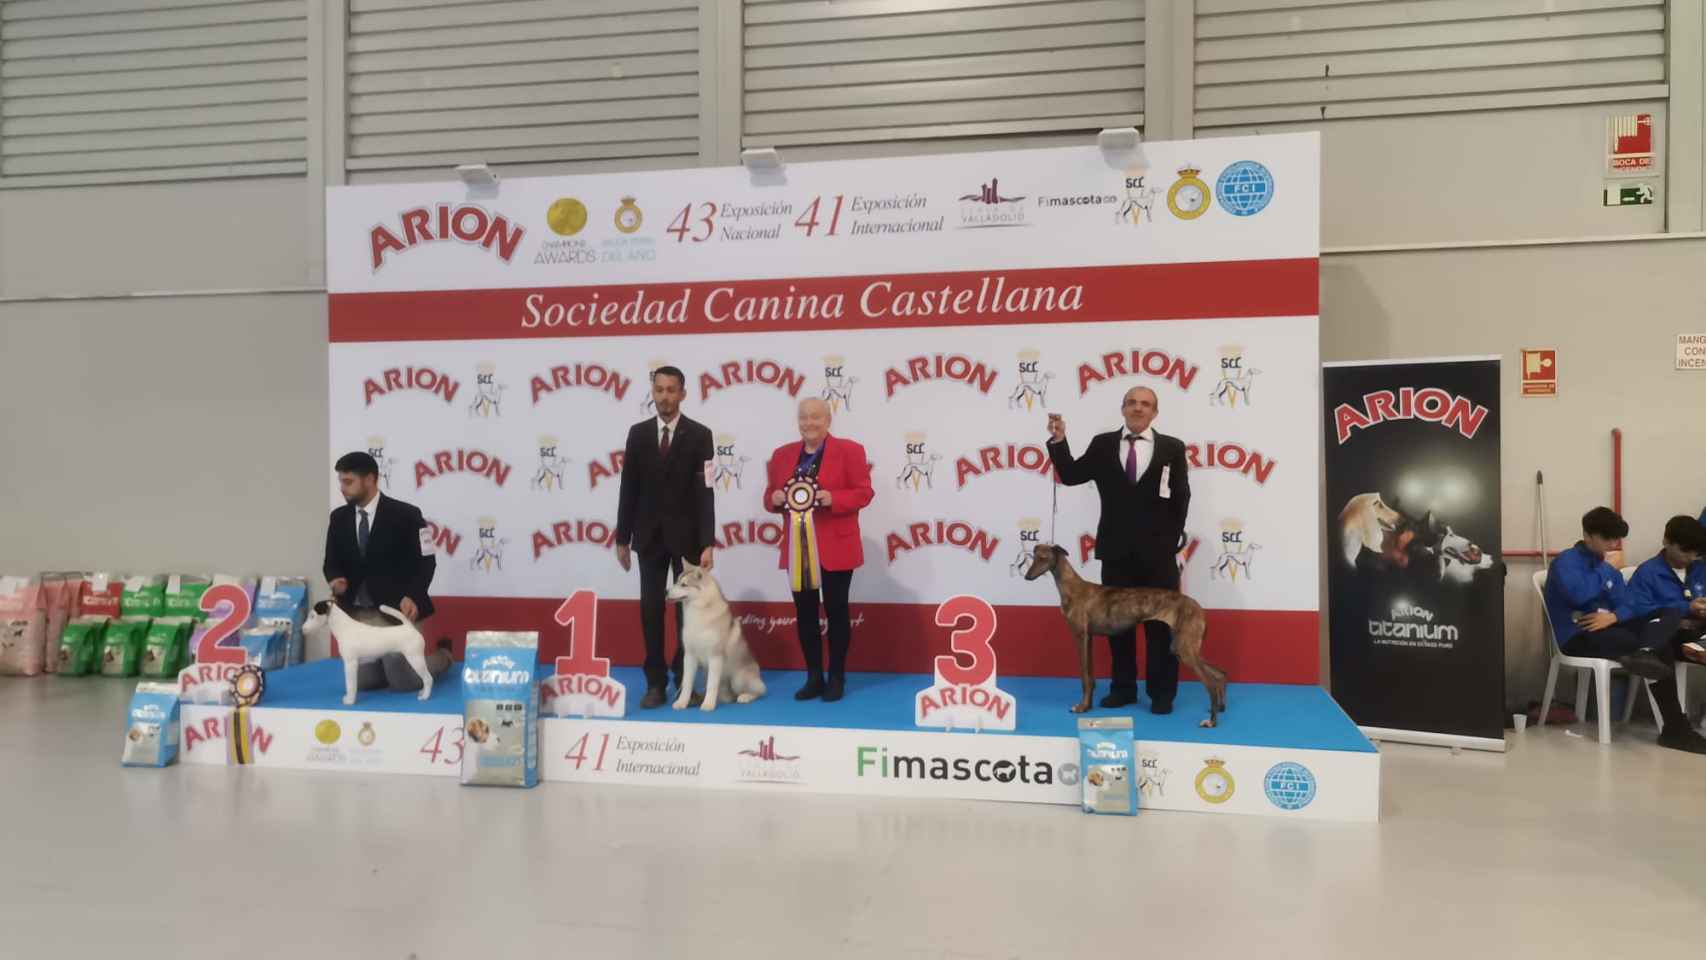 Los tres mejores cachorros de la 43 exposición nacional y 41 exposición internacional canina celebradas en la Feria de Valladolid